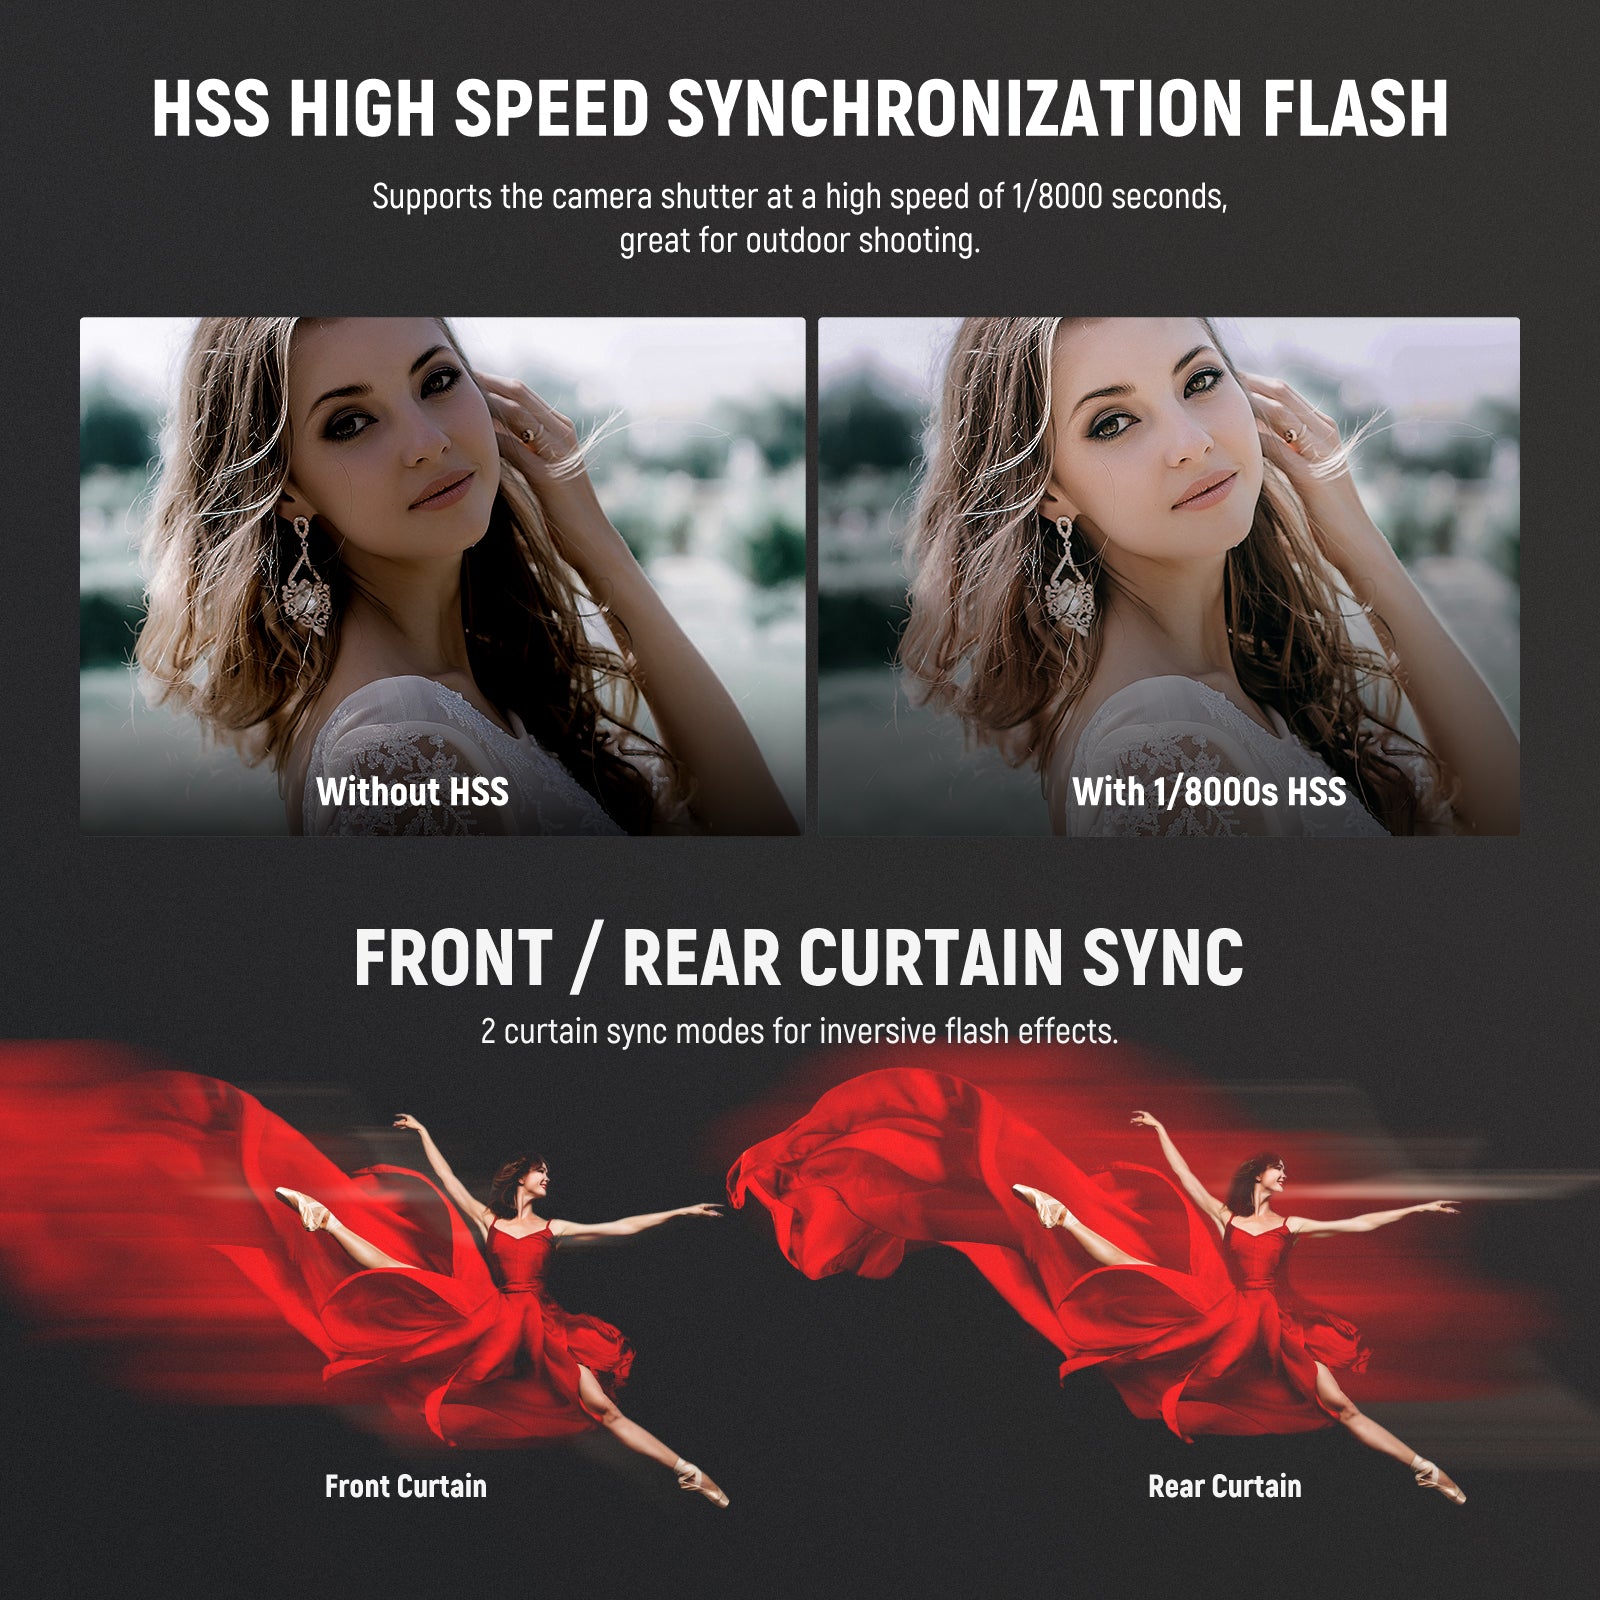 NEEWER Z1-S TTL Round Head Flash Speedlite for Sony DSLR Cameras, 76Ws 2.4G  1/8000s HSS Speedlight, 10 Levels LED Modeling Lamp, 2600mAh Lithium